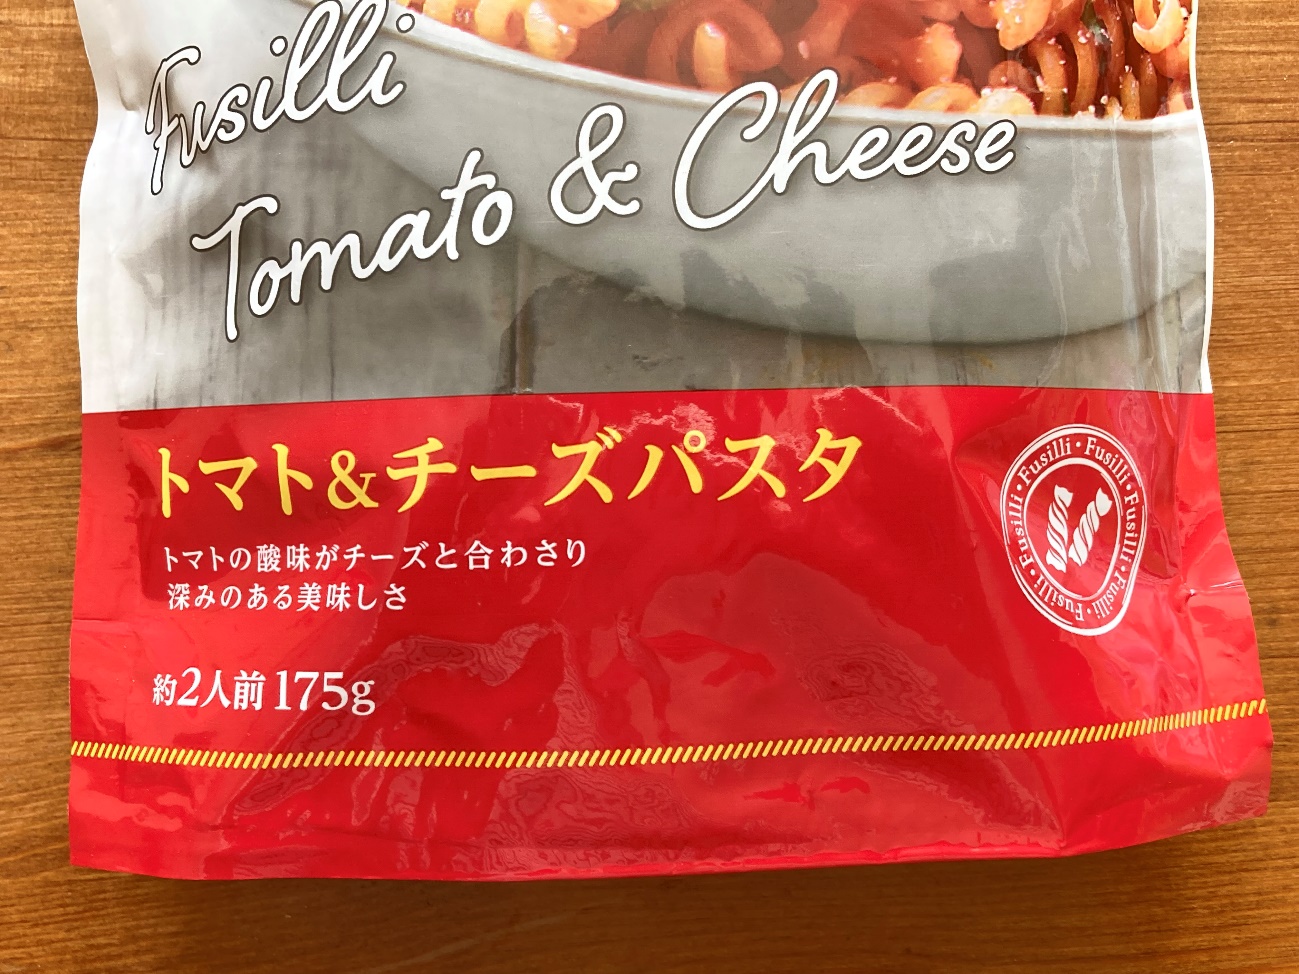 業務スーパーのトマト&チーズパスタ（パスタ入り）のパッケージ下部